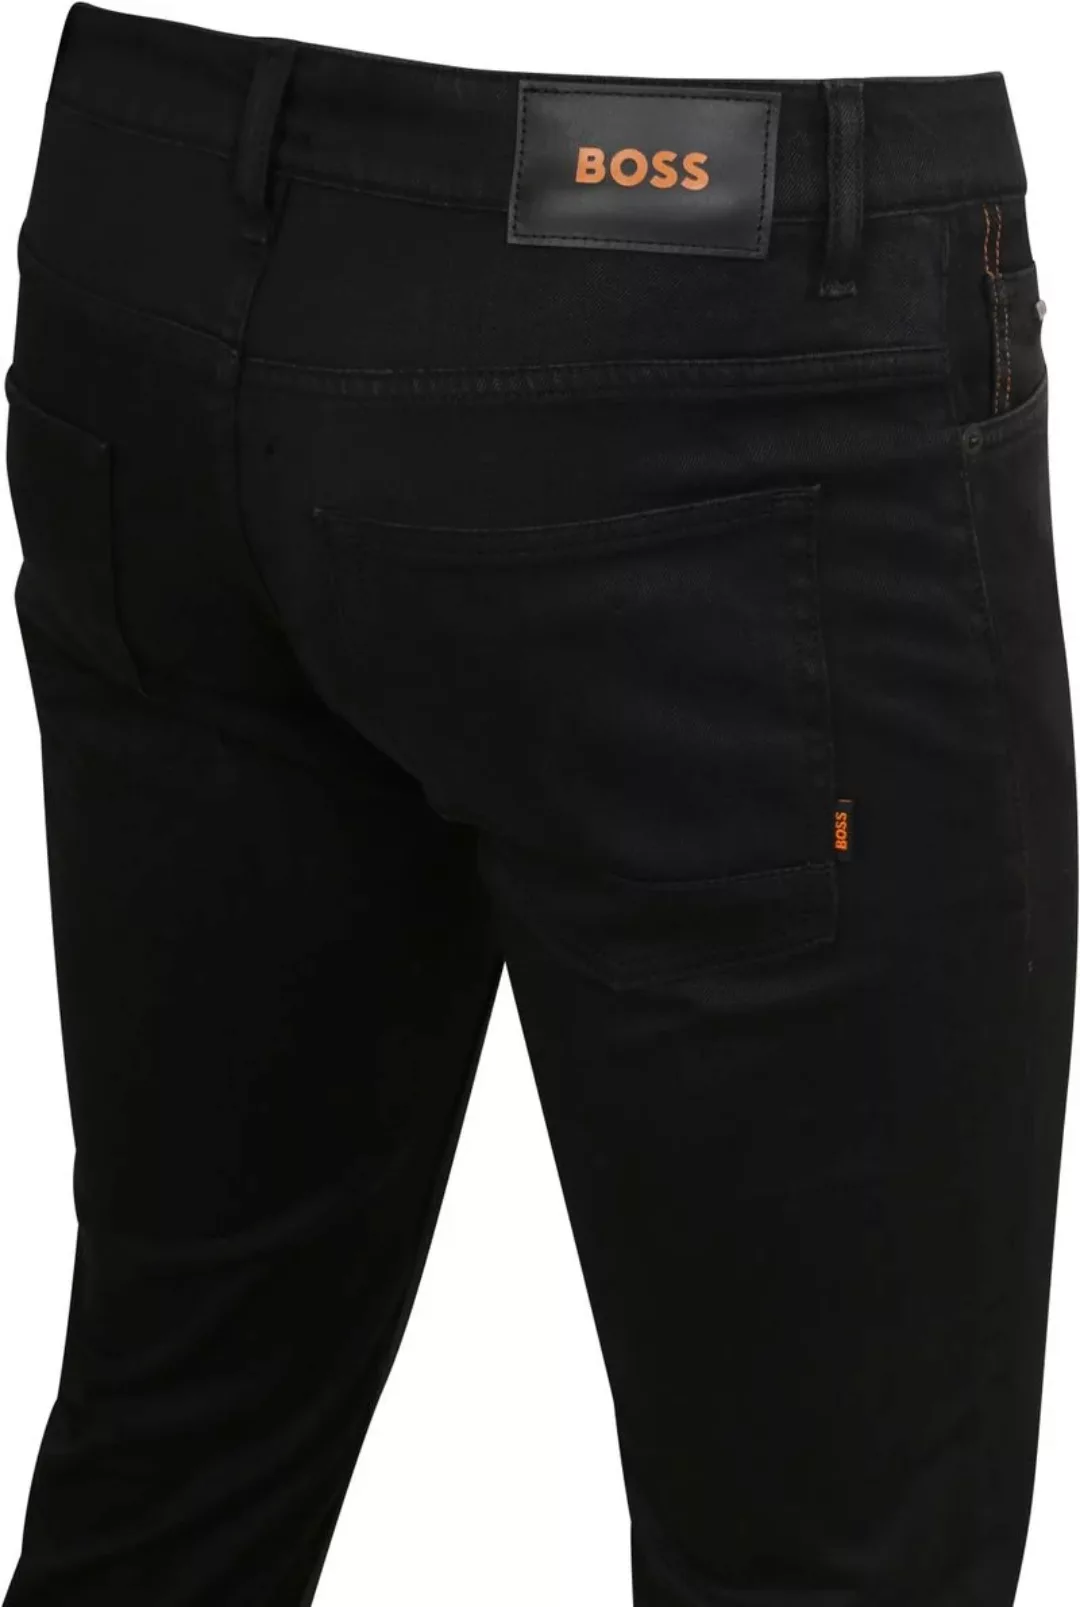 BOSS Delaware Jeans Schwarz - Größe W 34 - L 32 günstig online kaufen